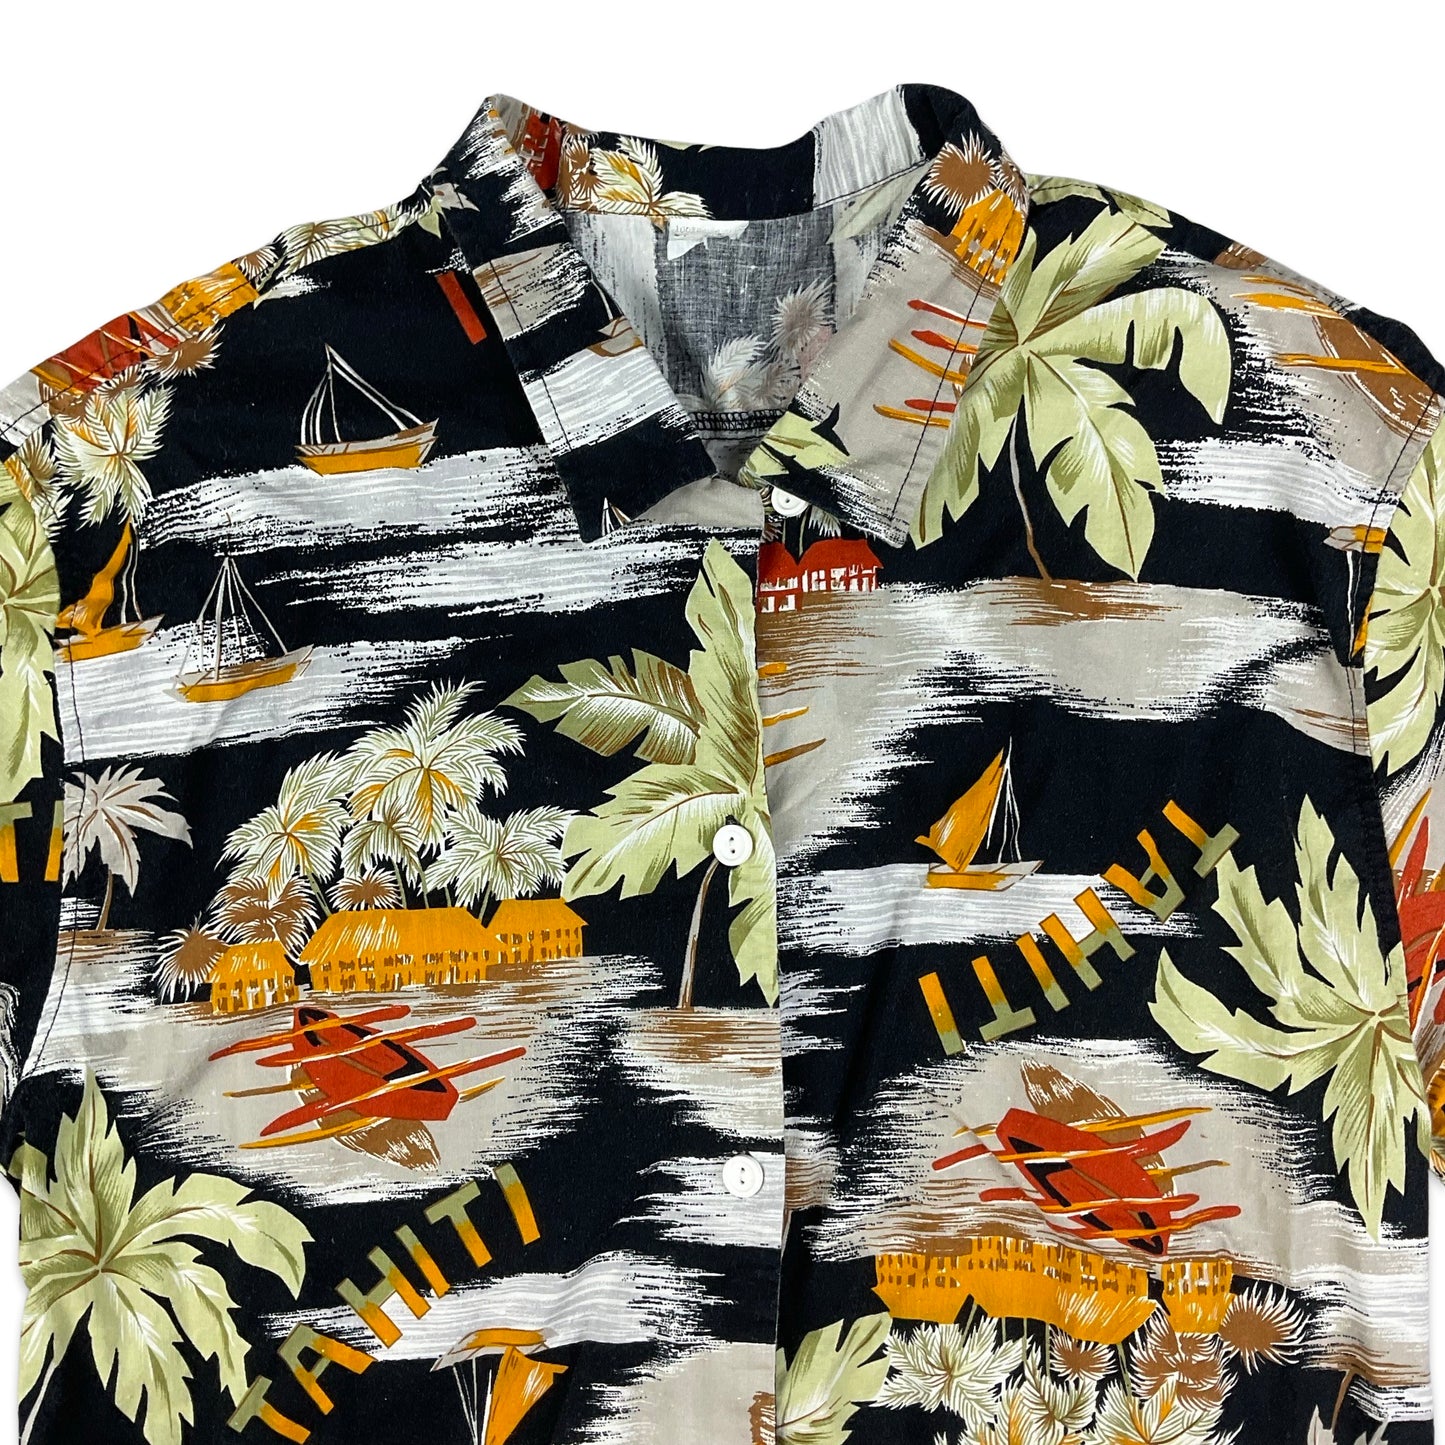 Vintage Hawaiian Short Sleeve Shirt XS S